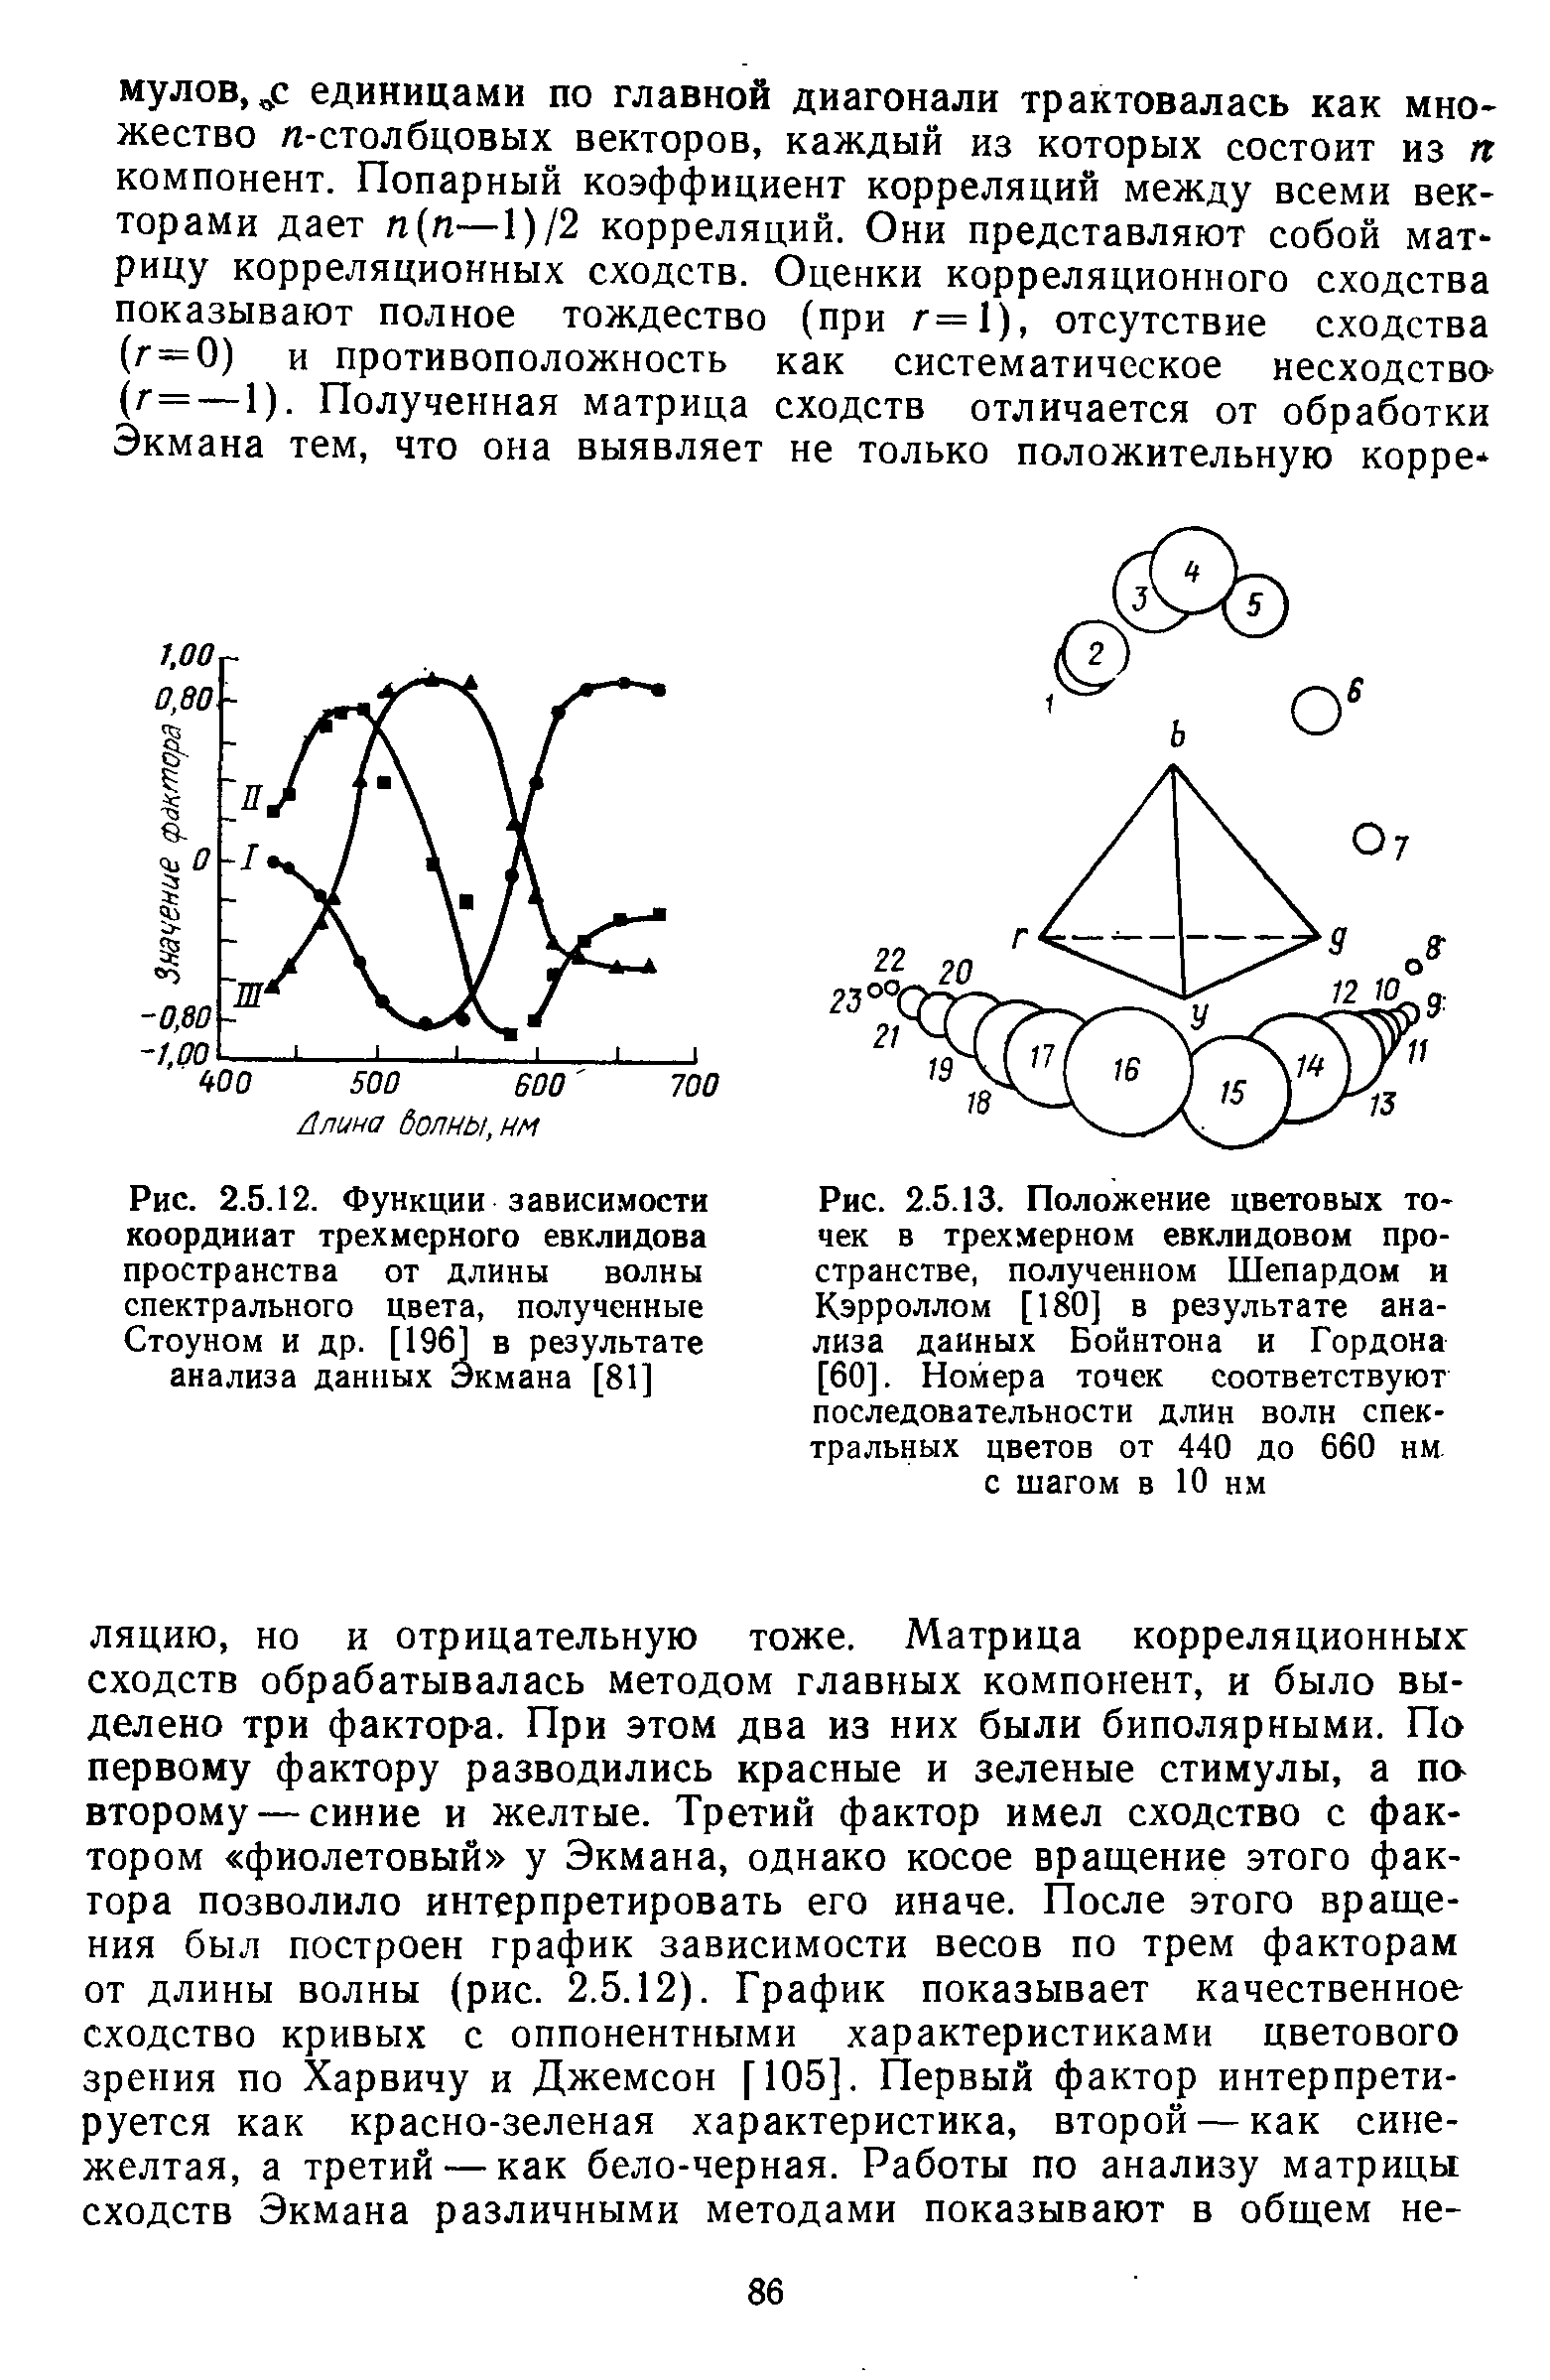 Рис. 2.5.12. Функции зависимости координат трехмерного евклидова пространства от длины волны спектрального цвета, полученные Стоуном и др. [1961 в результате анализа данных Экмана [81]...